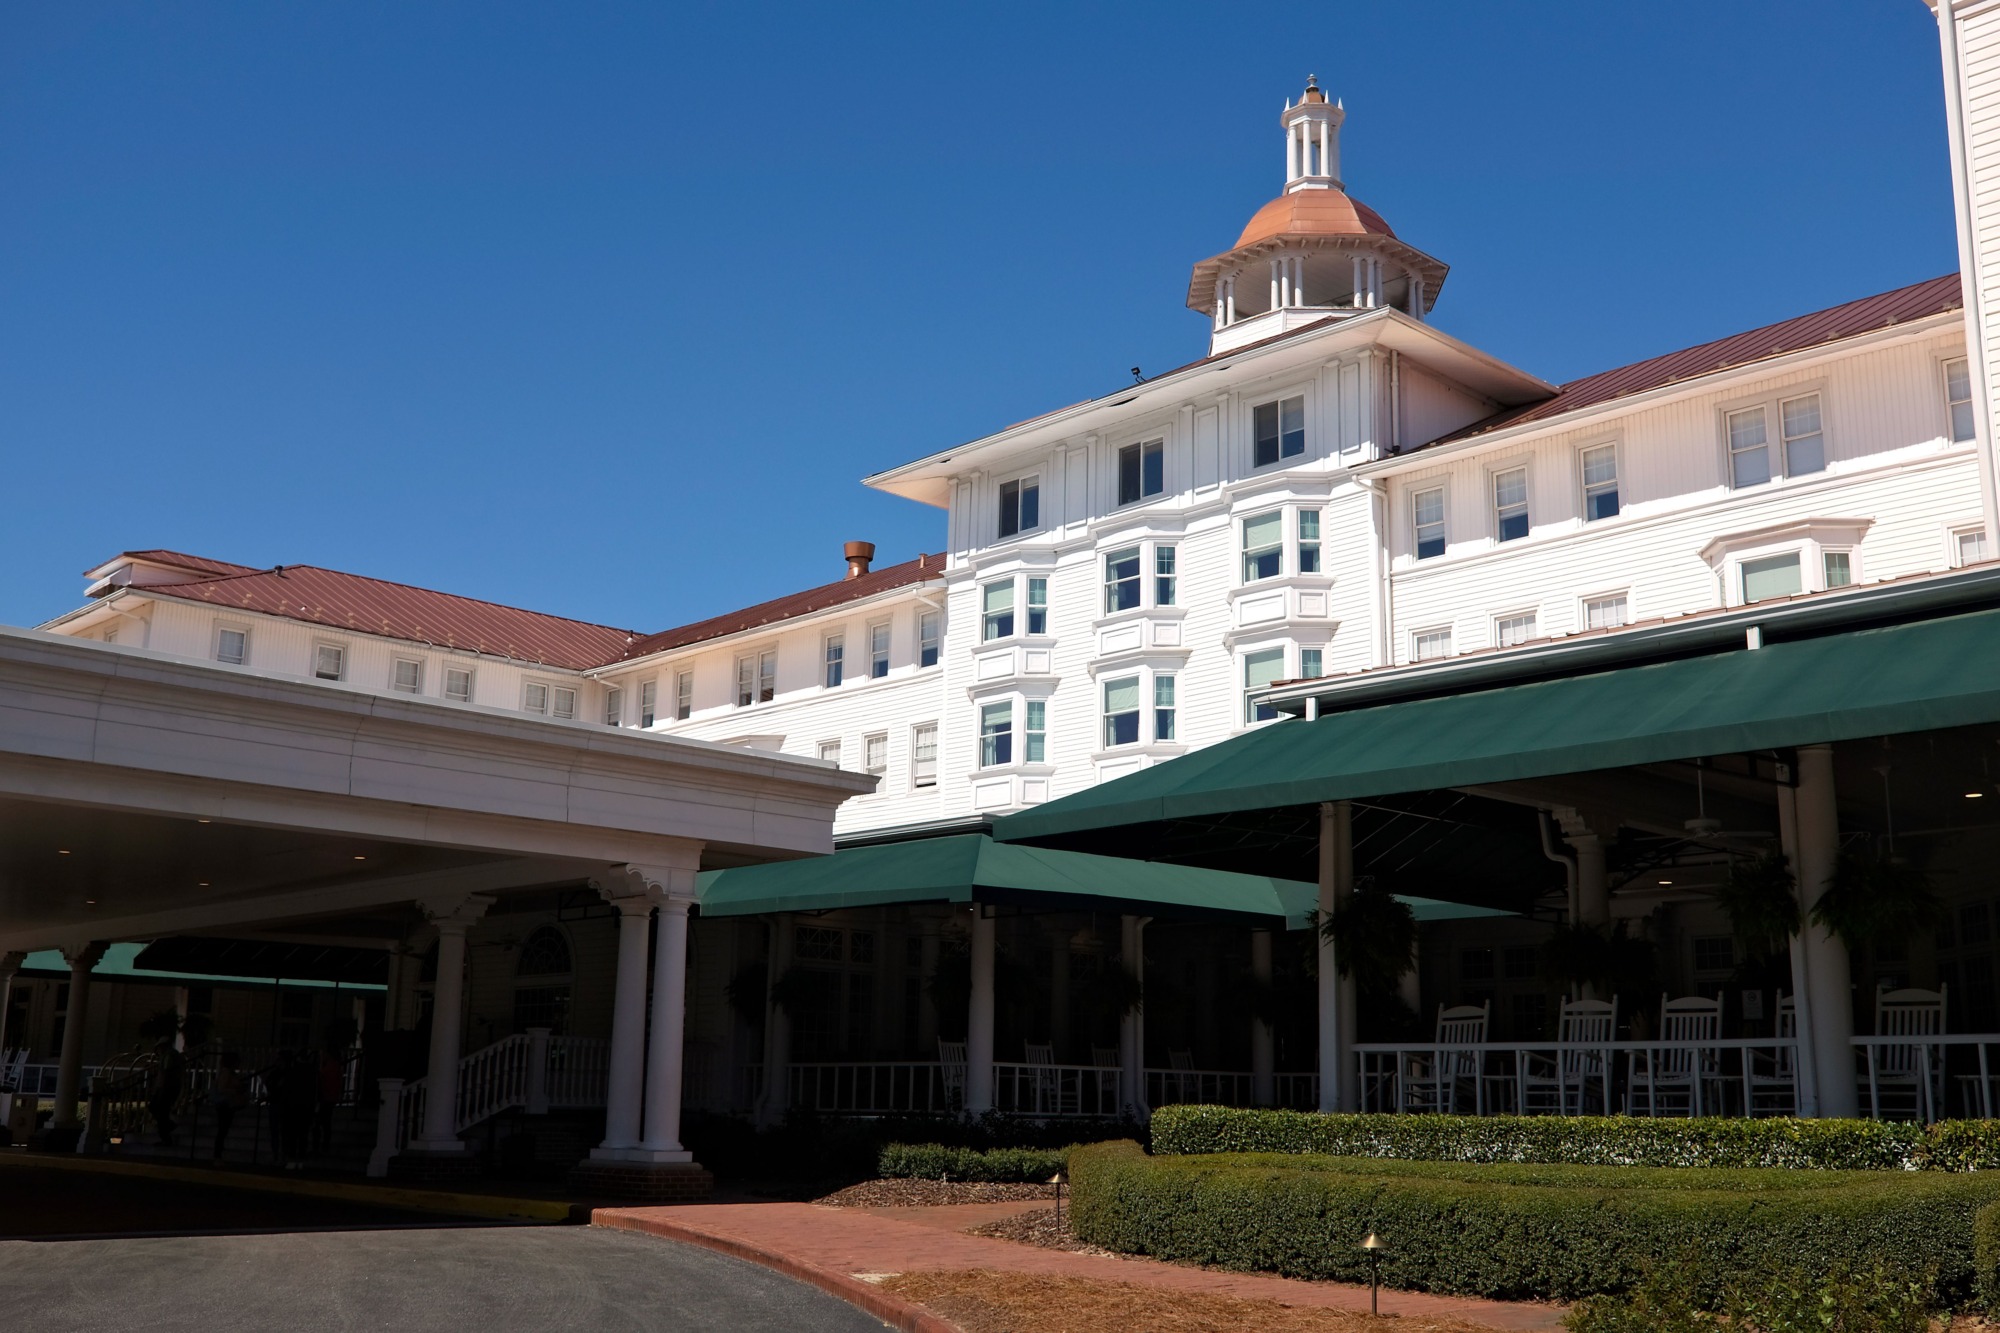 Exterior of the Carolina Hotel at Pinehurst Resort